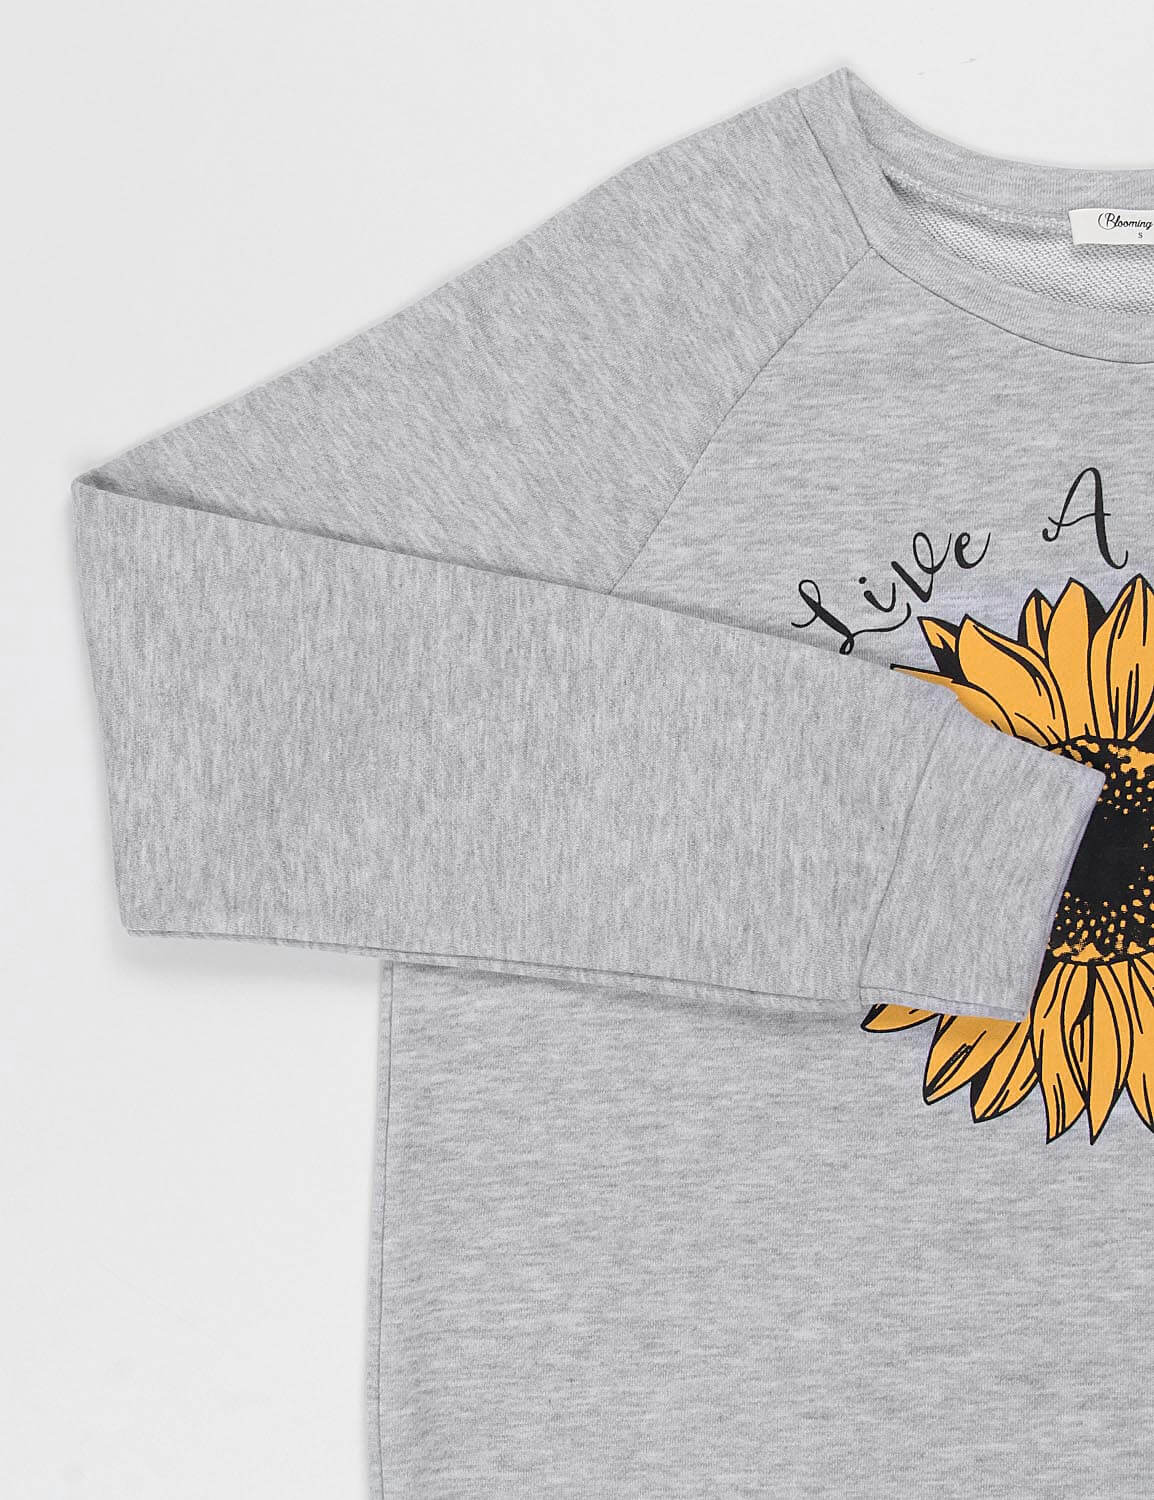 Live A Little Sunflower Sweatshirt